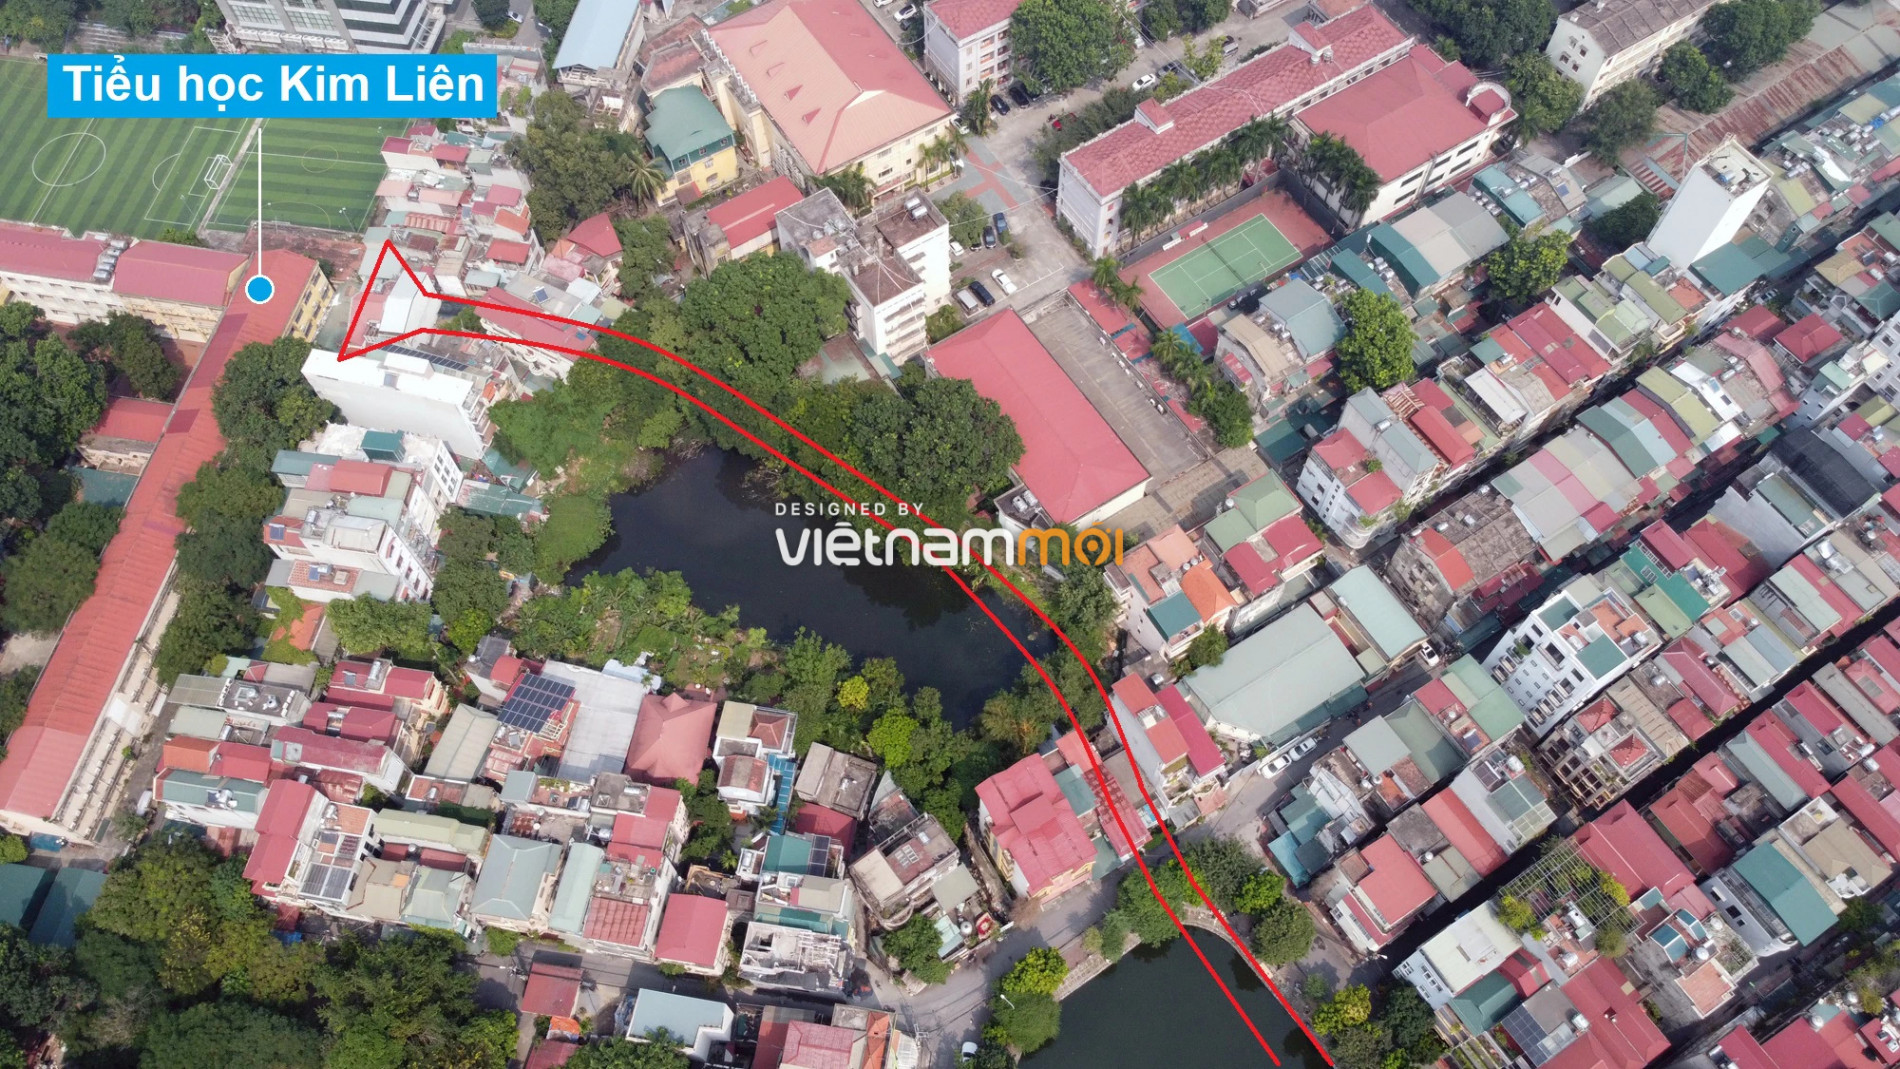 Những khu đất sắp thu hồi để mở đường ở quận Đống Đa, Hà Nội (phần 2) - Ảnh 12.